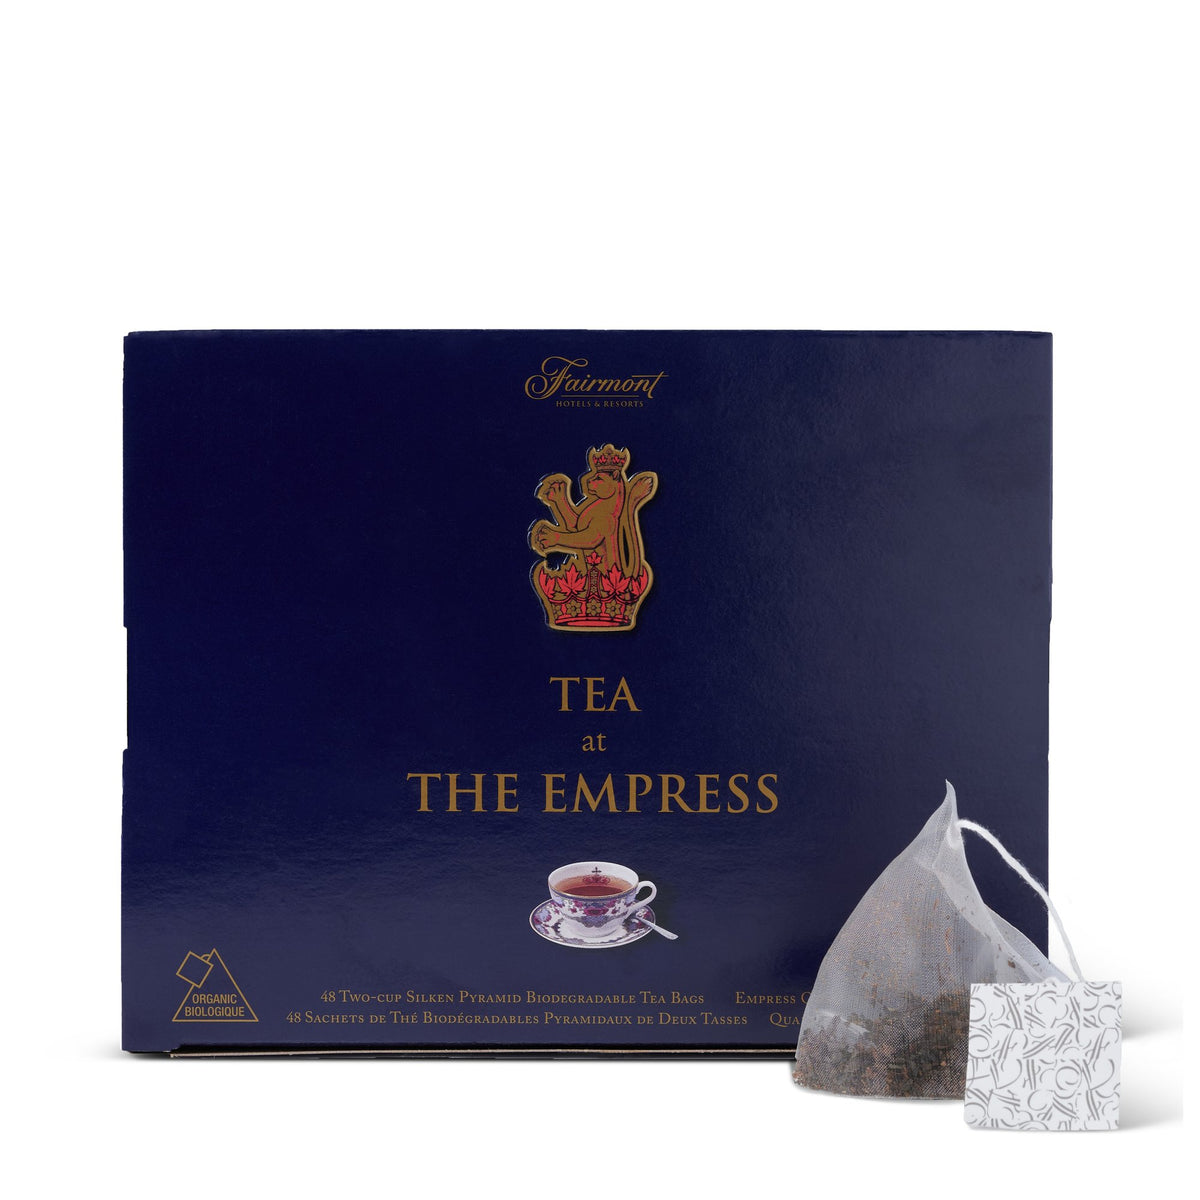 Tea at The Empress (Empress Orange Pekoe)